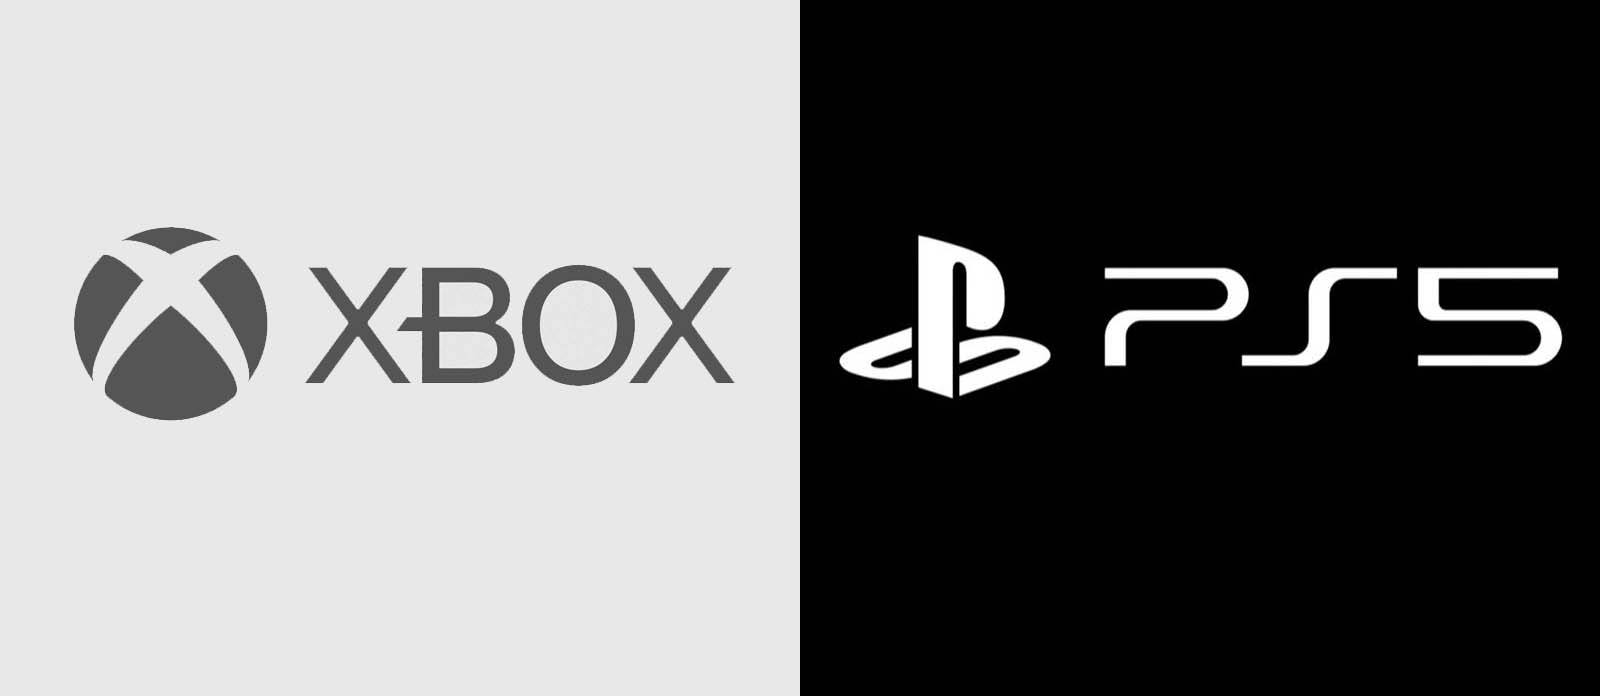 Xbox PS5 Logos